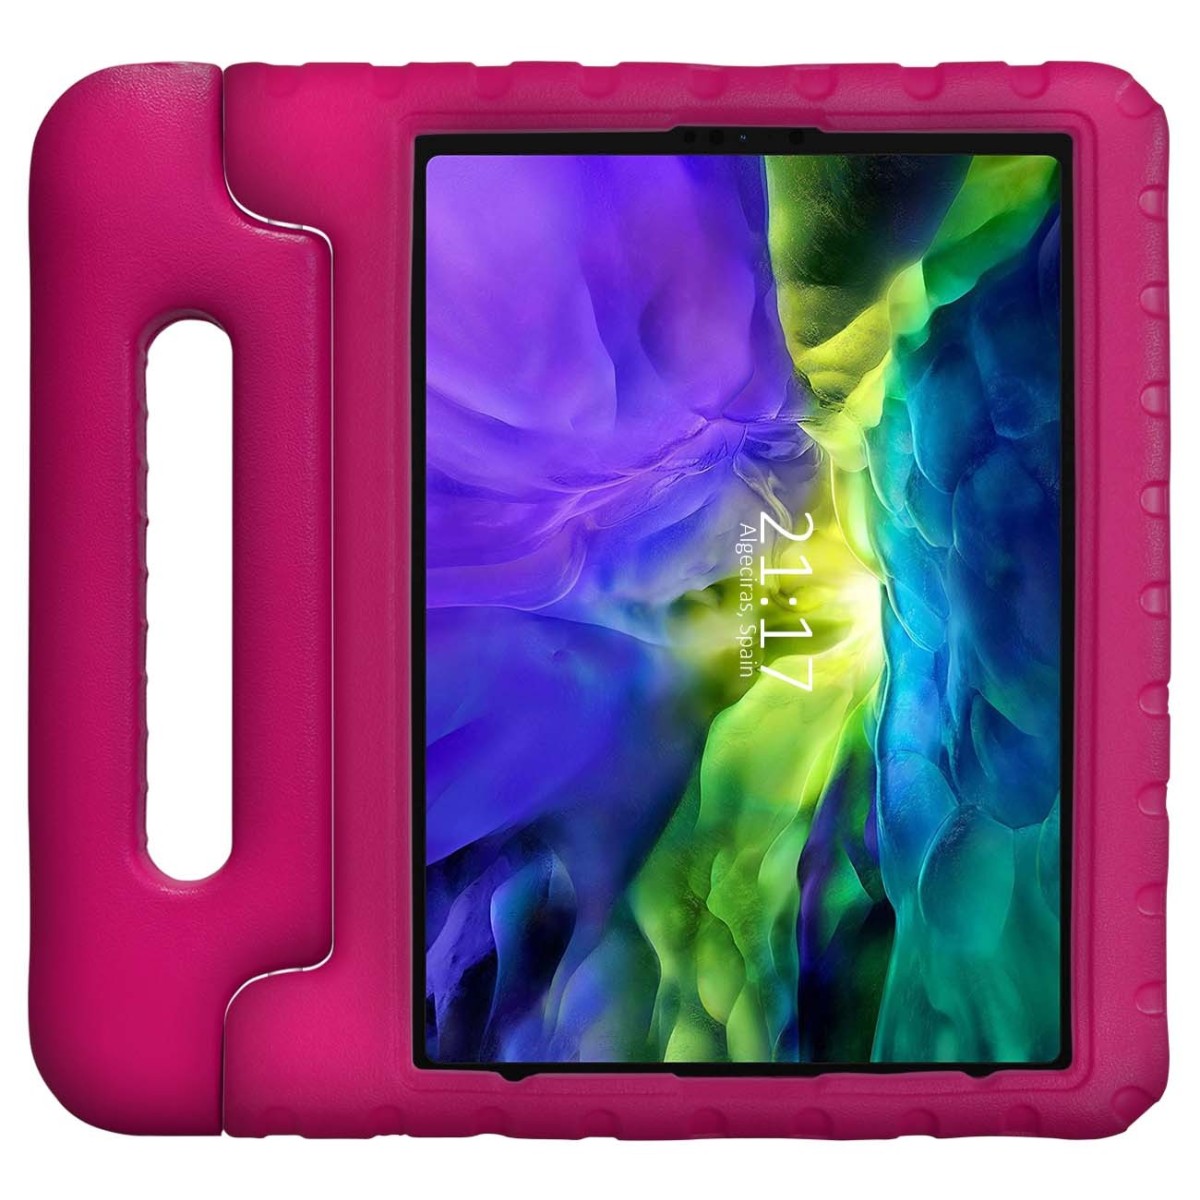 Funda Infantil Antigolpes con Asa para iPad Pro 11 (2020) 2ª Gen. color Rosa